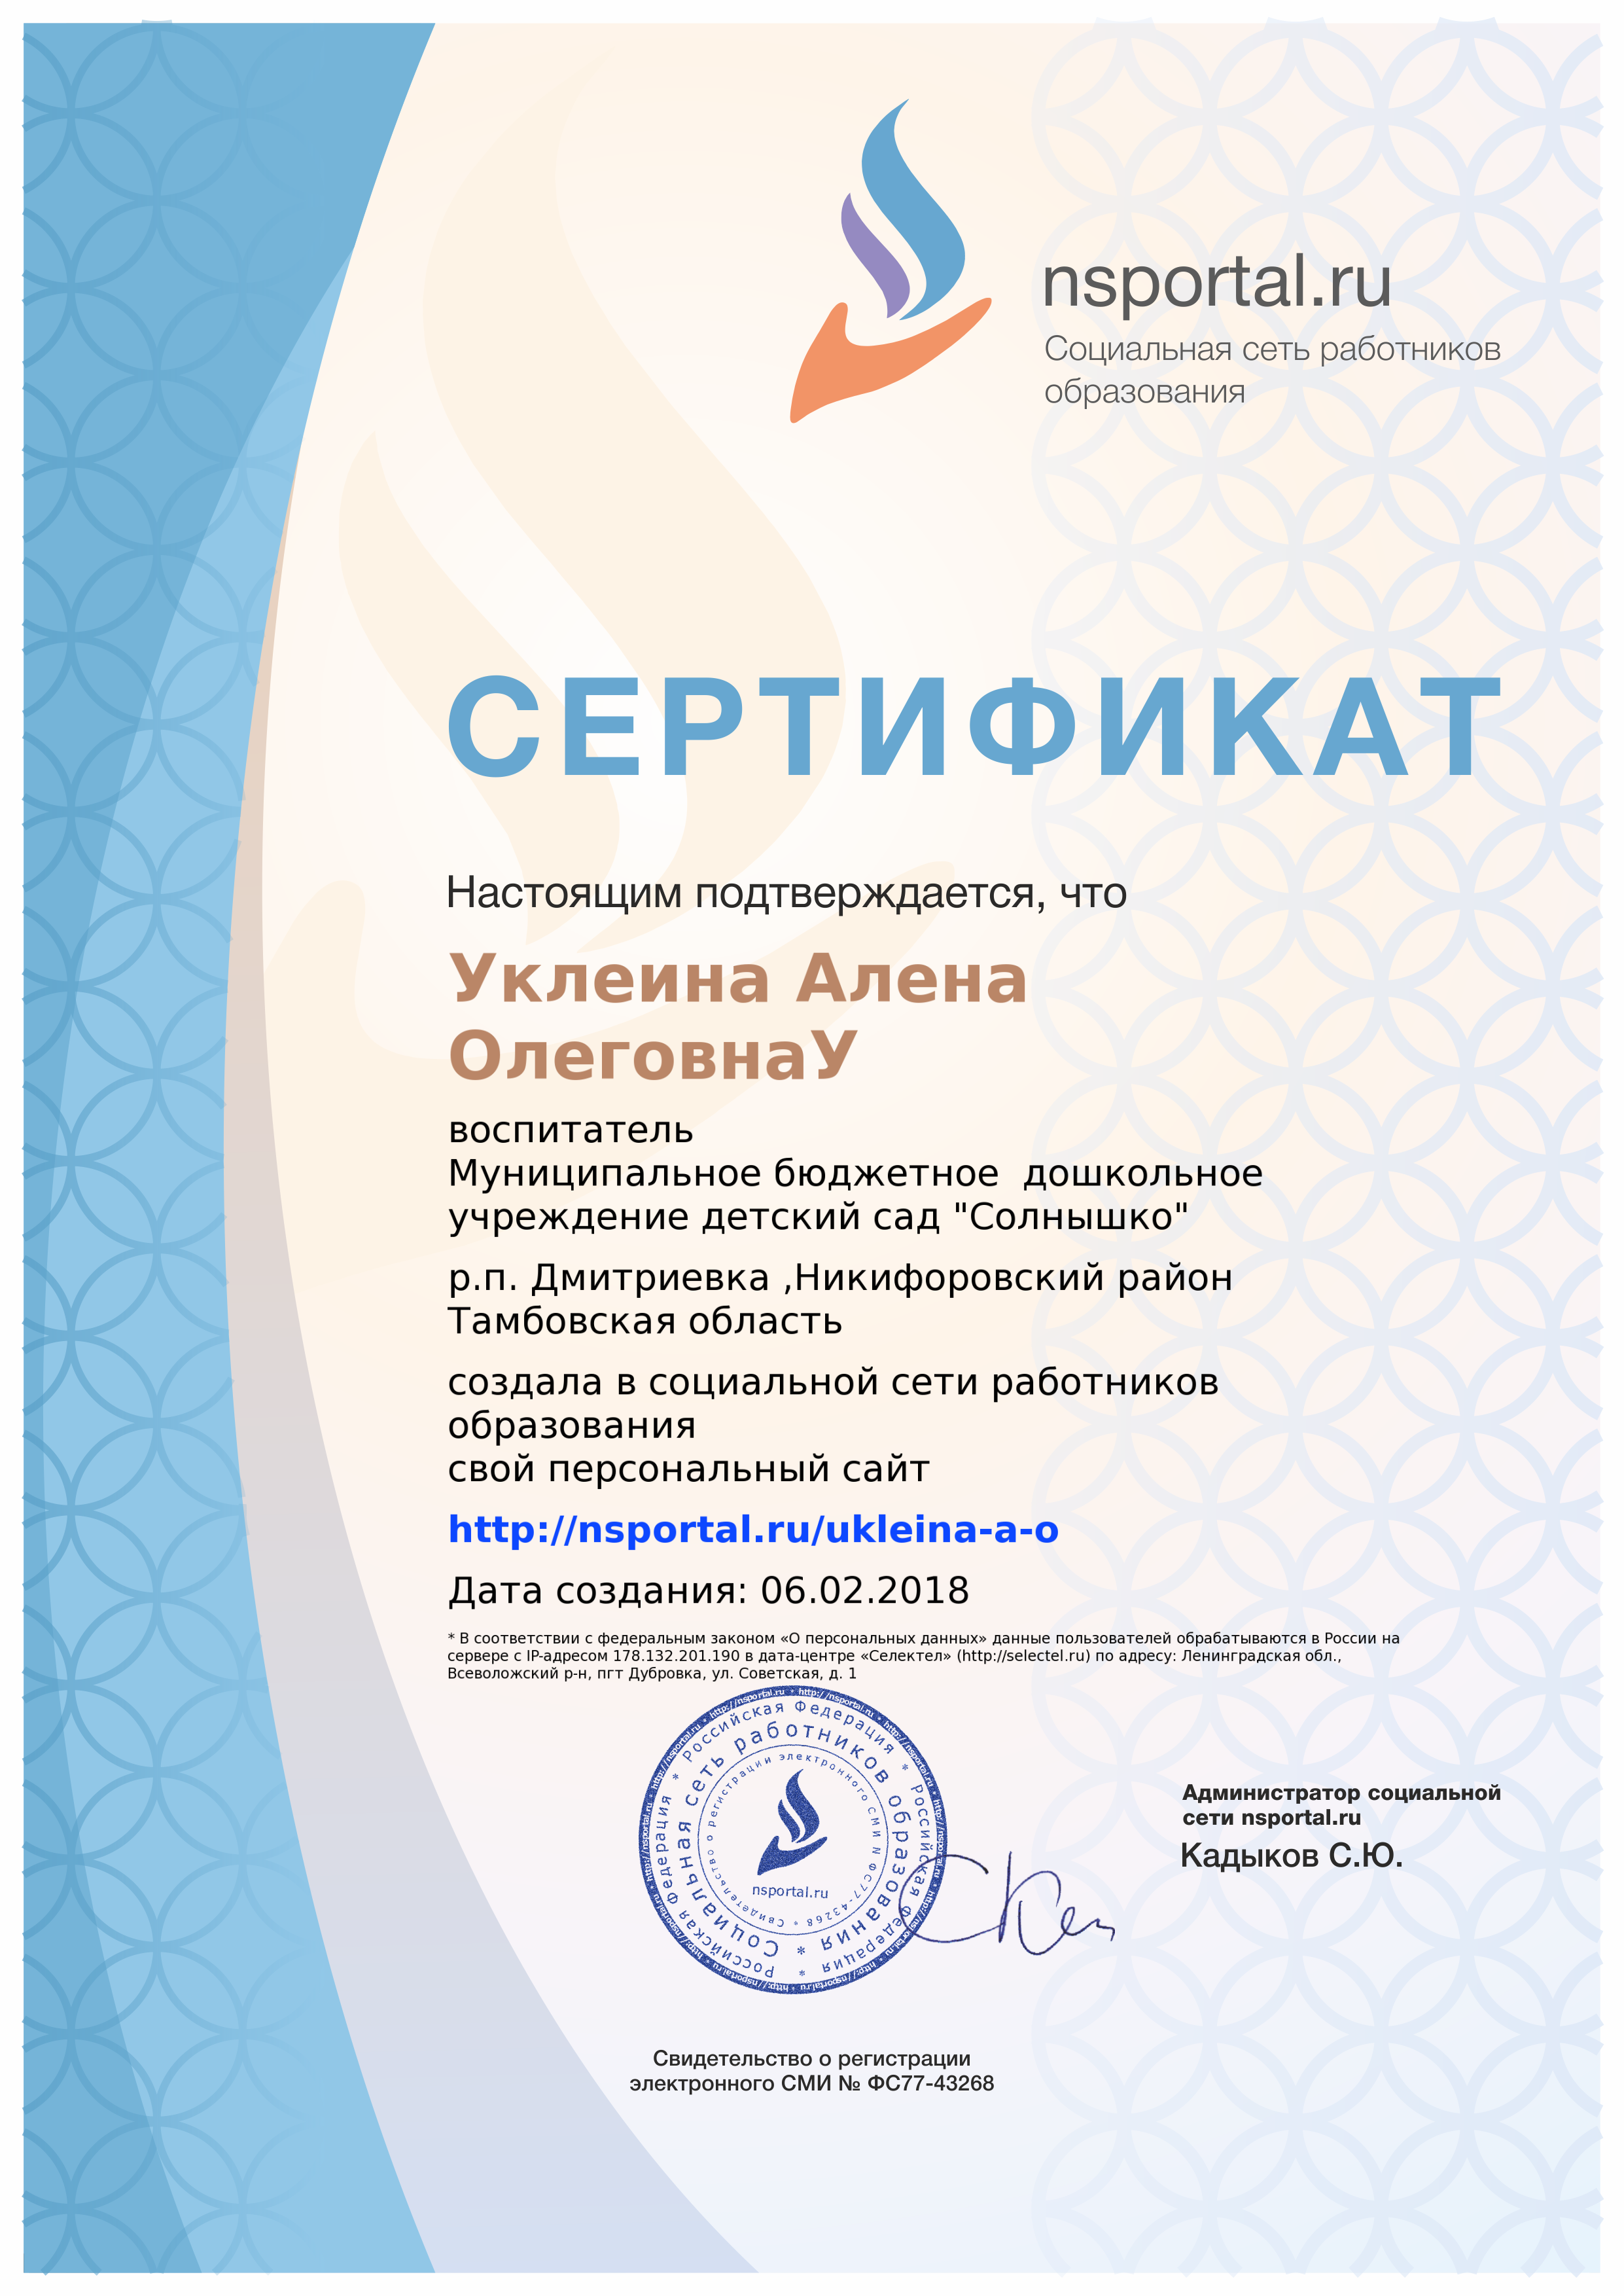 sertifikat_site-1008378-130206